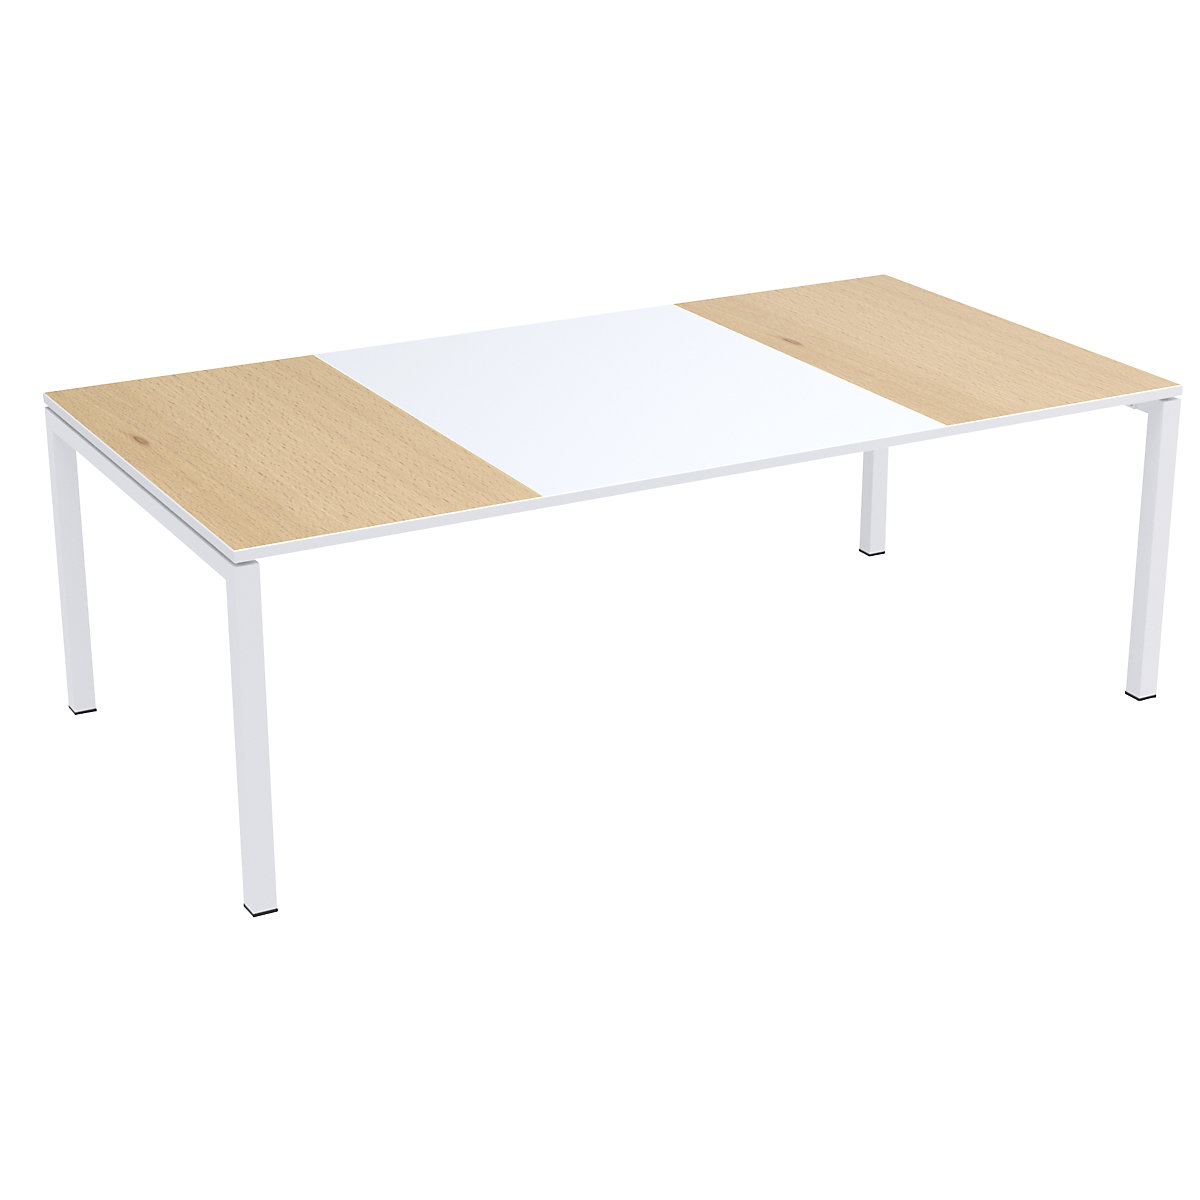 Konferenztisch easyDesk® Paperflow, HxBxT 750 x 2200 x 1140 mm, weiß/Buche-Dekor-4